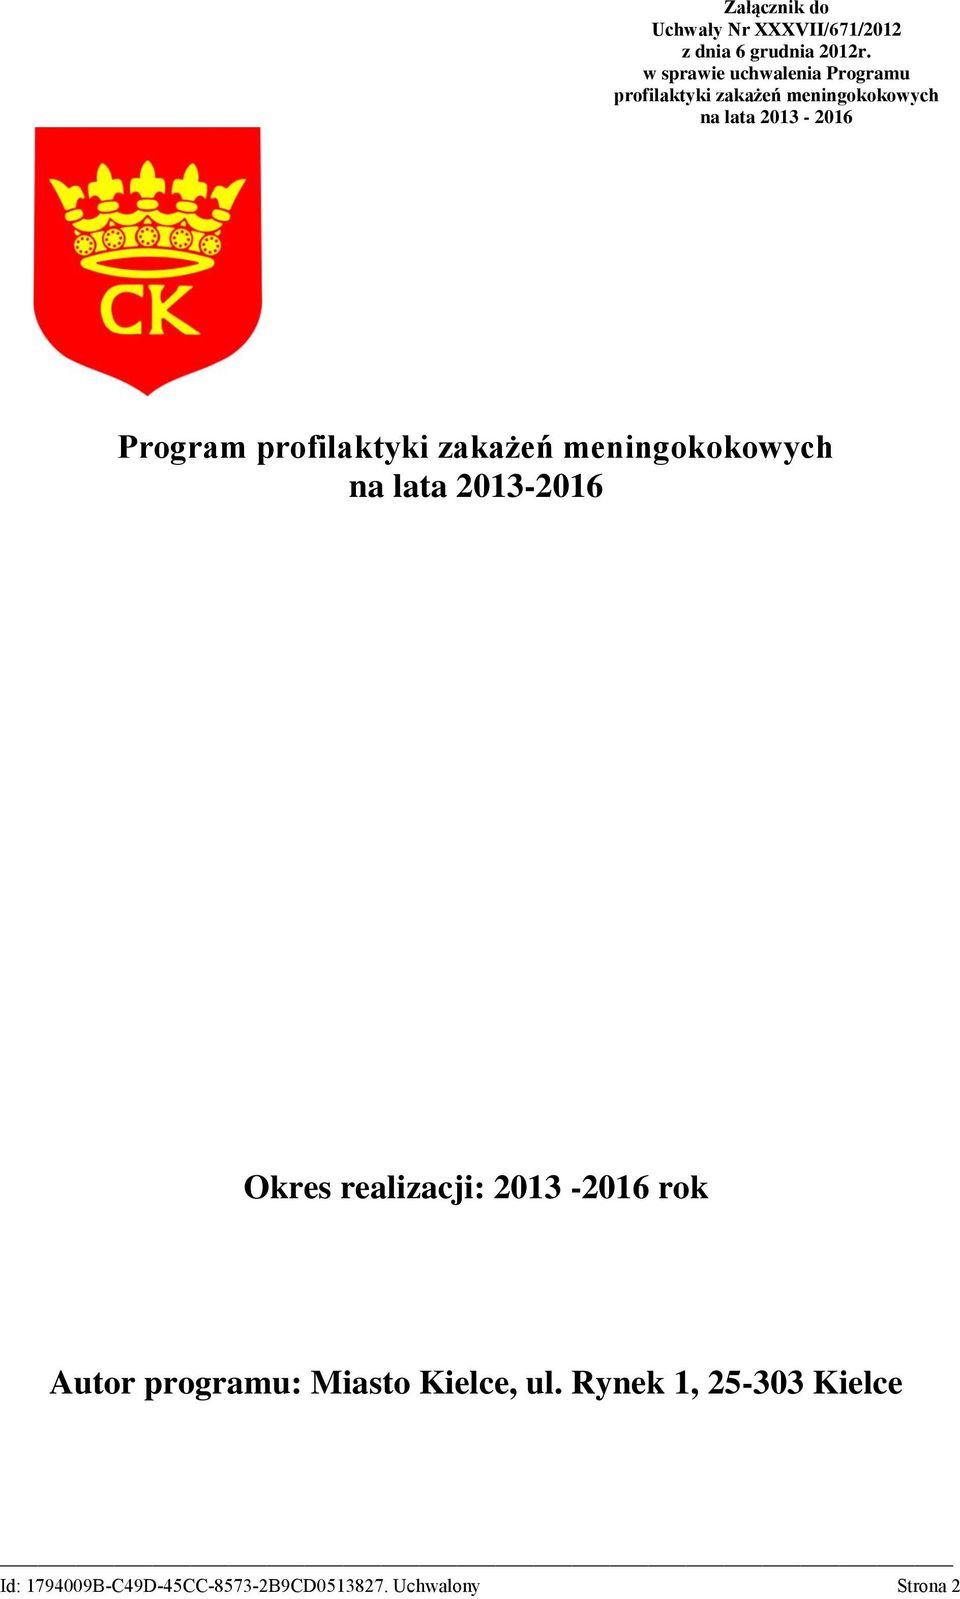 2013-2016 Program profilaktyki zakażeń meningokokowych na lata 2013-2016